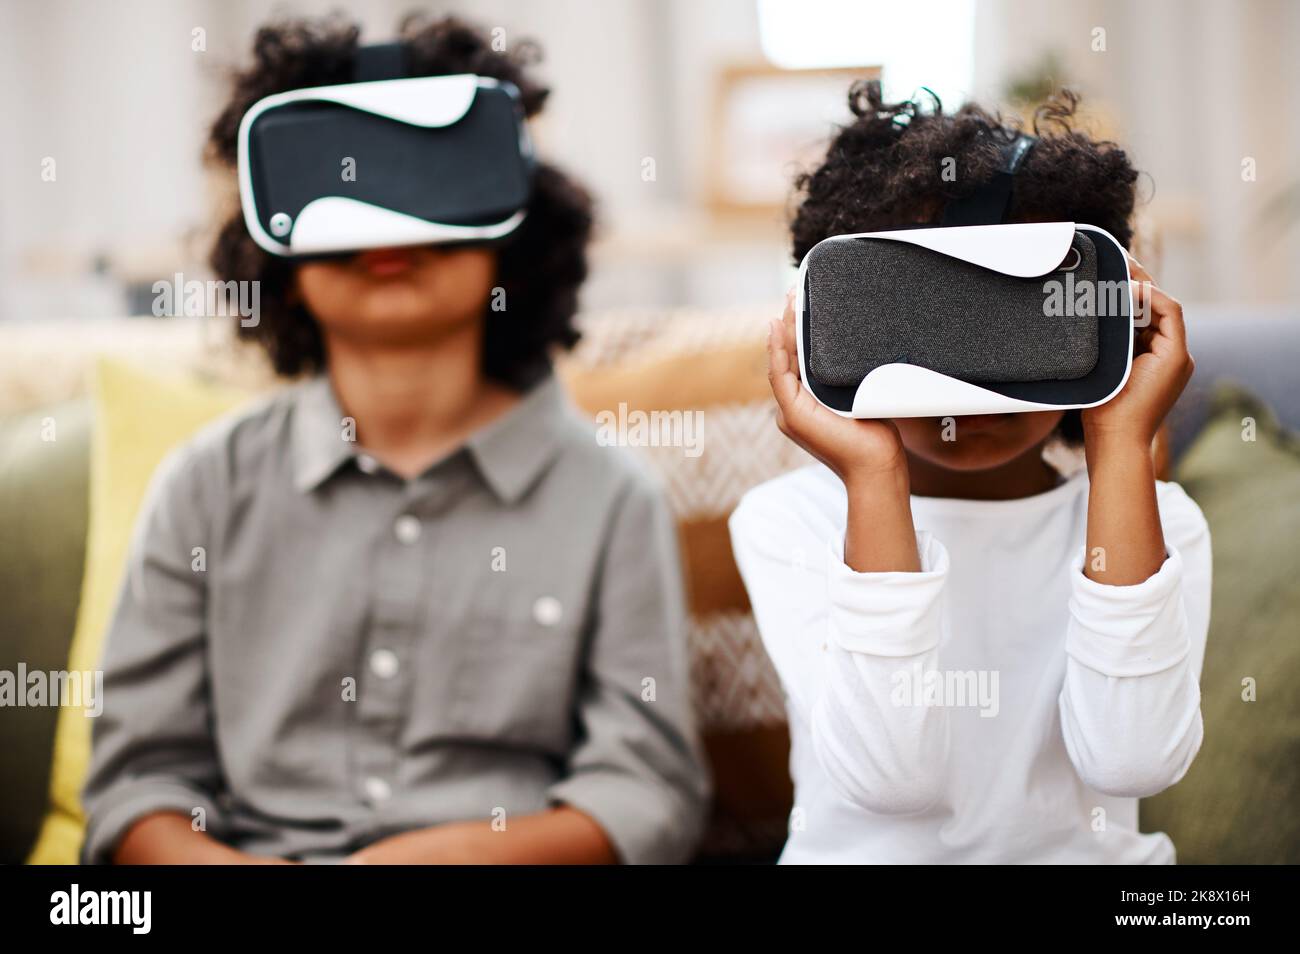 Die virtuelle Welt ist so cool: Zwei kleine Jungen schauen sich gemeinsam Filme über Virtual Reality-Headsets zu Hause an. Stockfoto